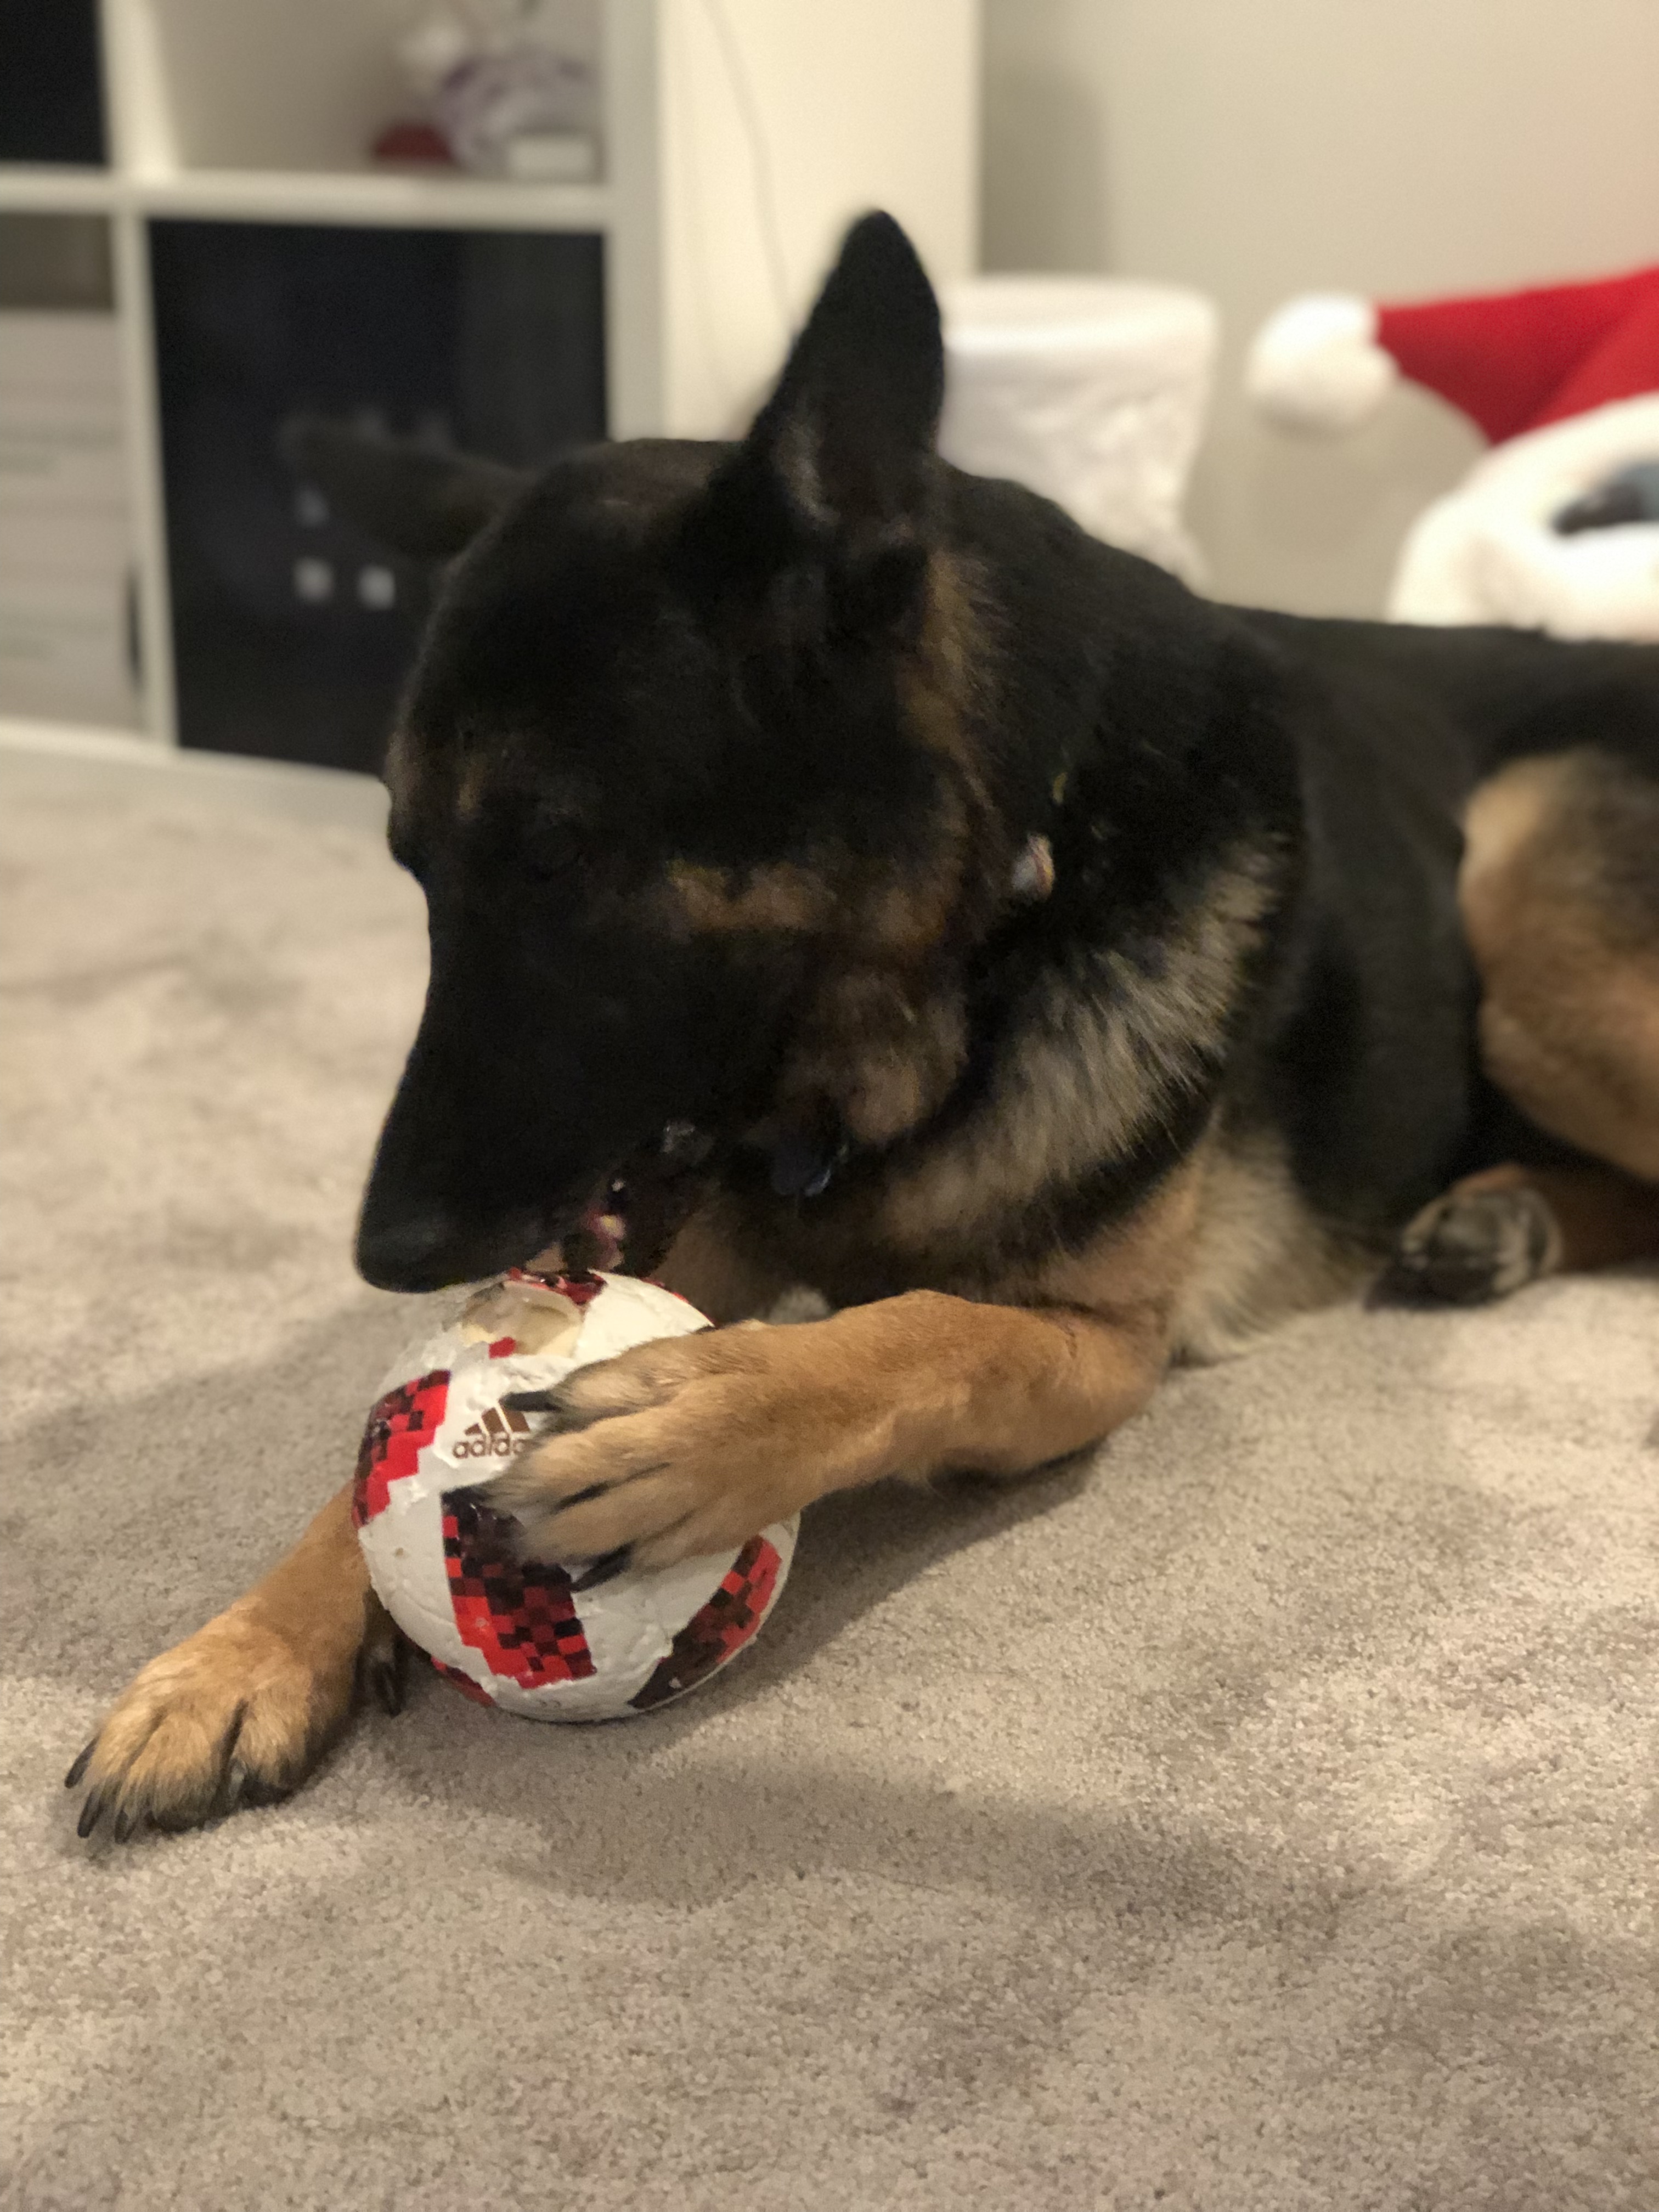 Jeter eating a soccer ball